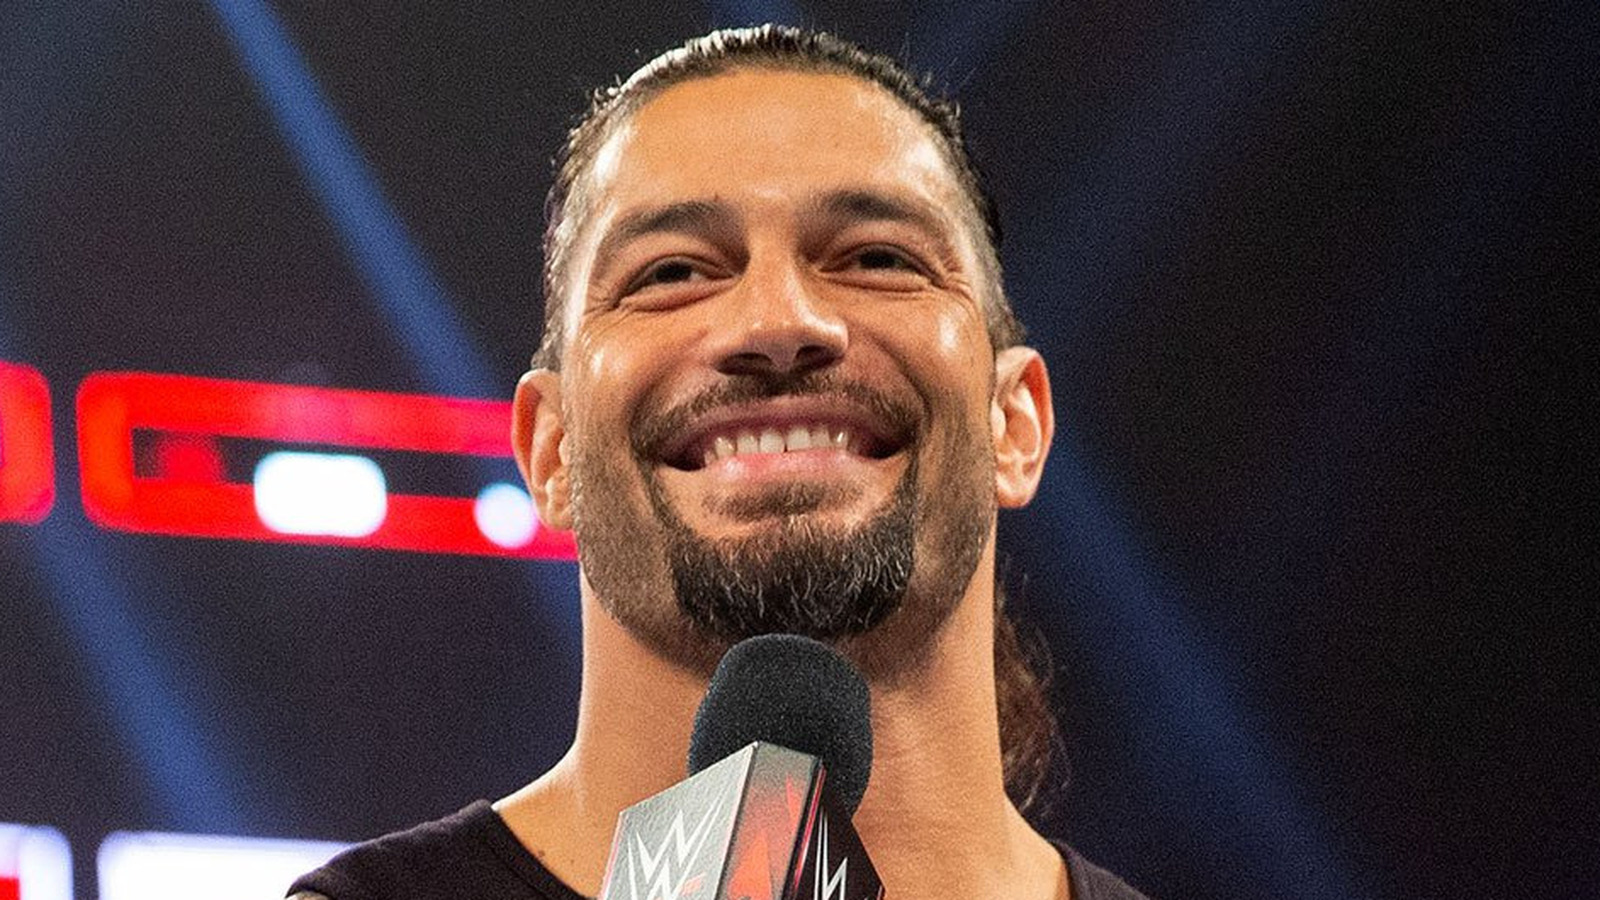 El miembro del Salón de la Fama de la WWE cree que Roman Reigns le dio a Kevin Owens 'El recibo' en SmackDown